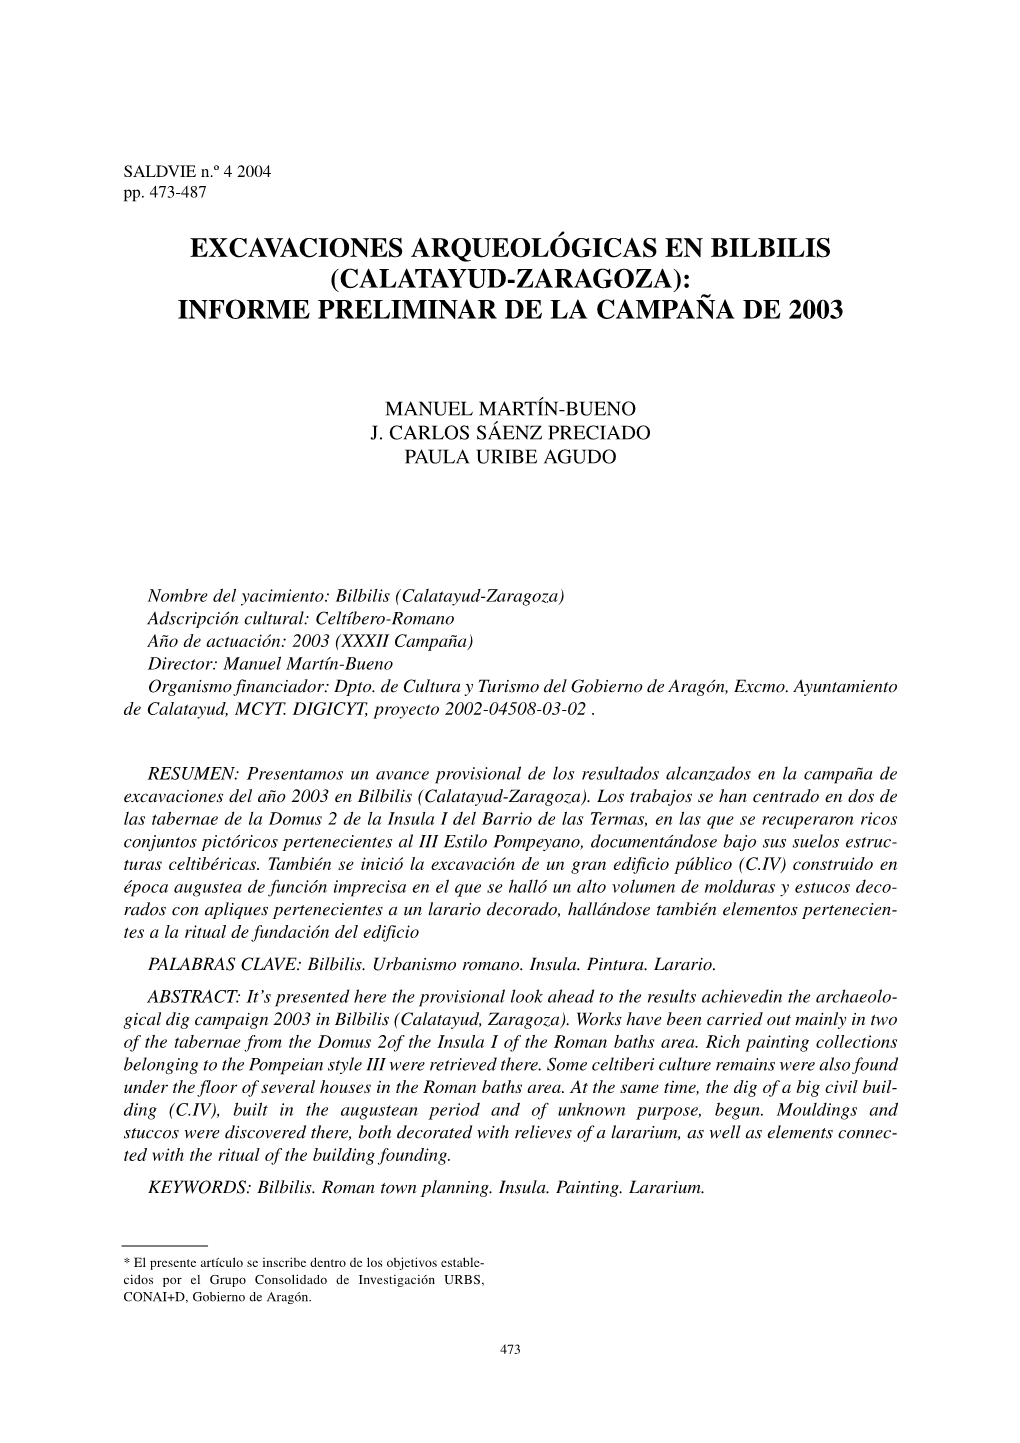 Excavaciones Arqueológicas En Bilbilis (Calatayud-Zaragoza): Informe Preliminar De La Campaña De 2003